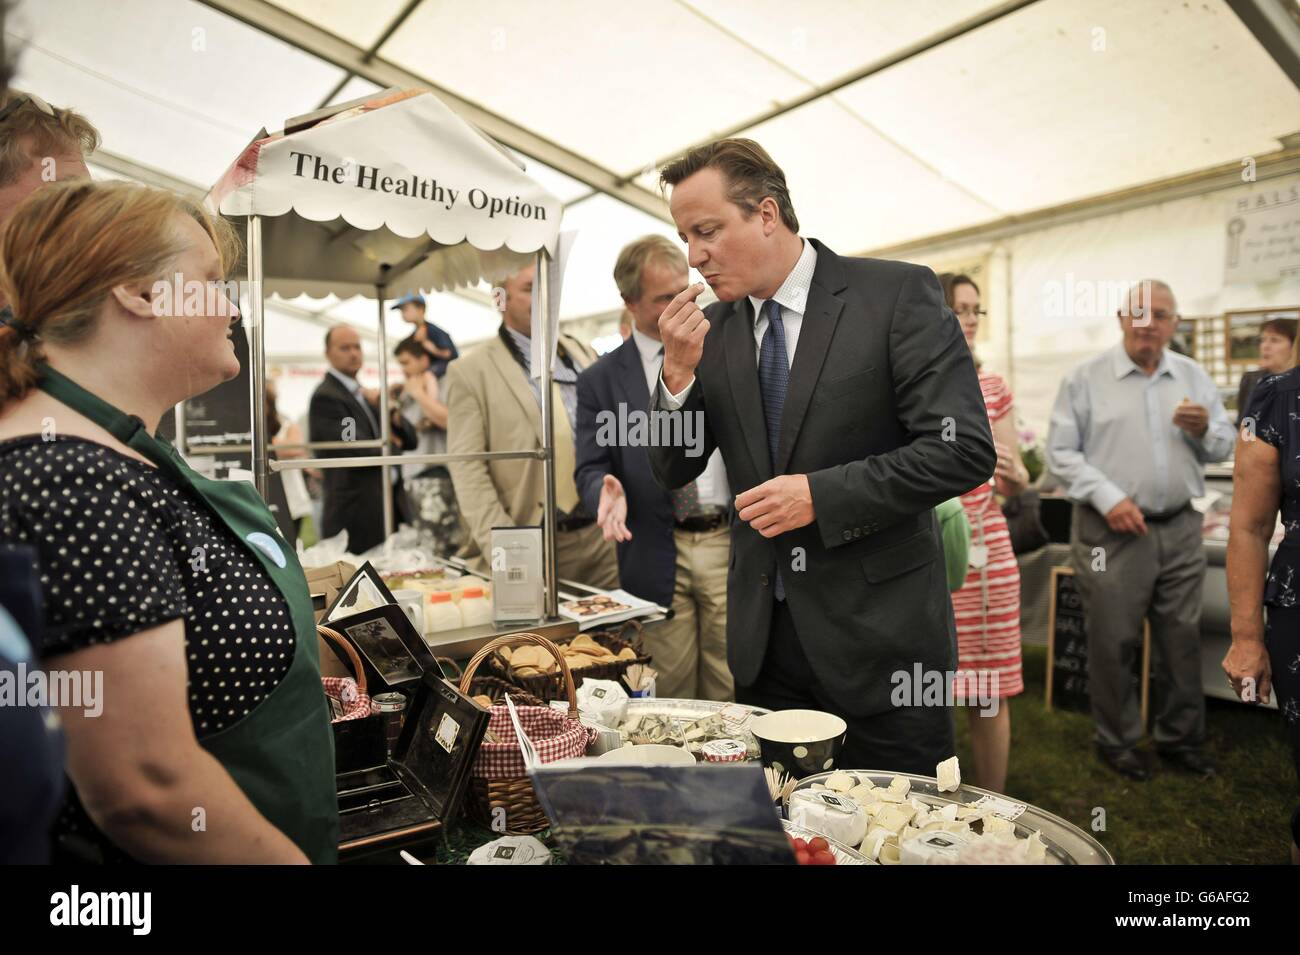 Le Premier ministre David Cameron goûte du fromage lorsqu'il discute avec les détenteurs de stalle lors d'une visite au salon agricole du North Devon, à la ferme Barton, à Umberleigh, dans le Devon. Banque D'Images